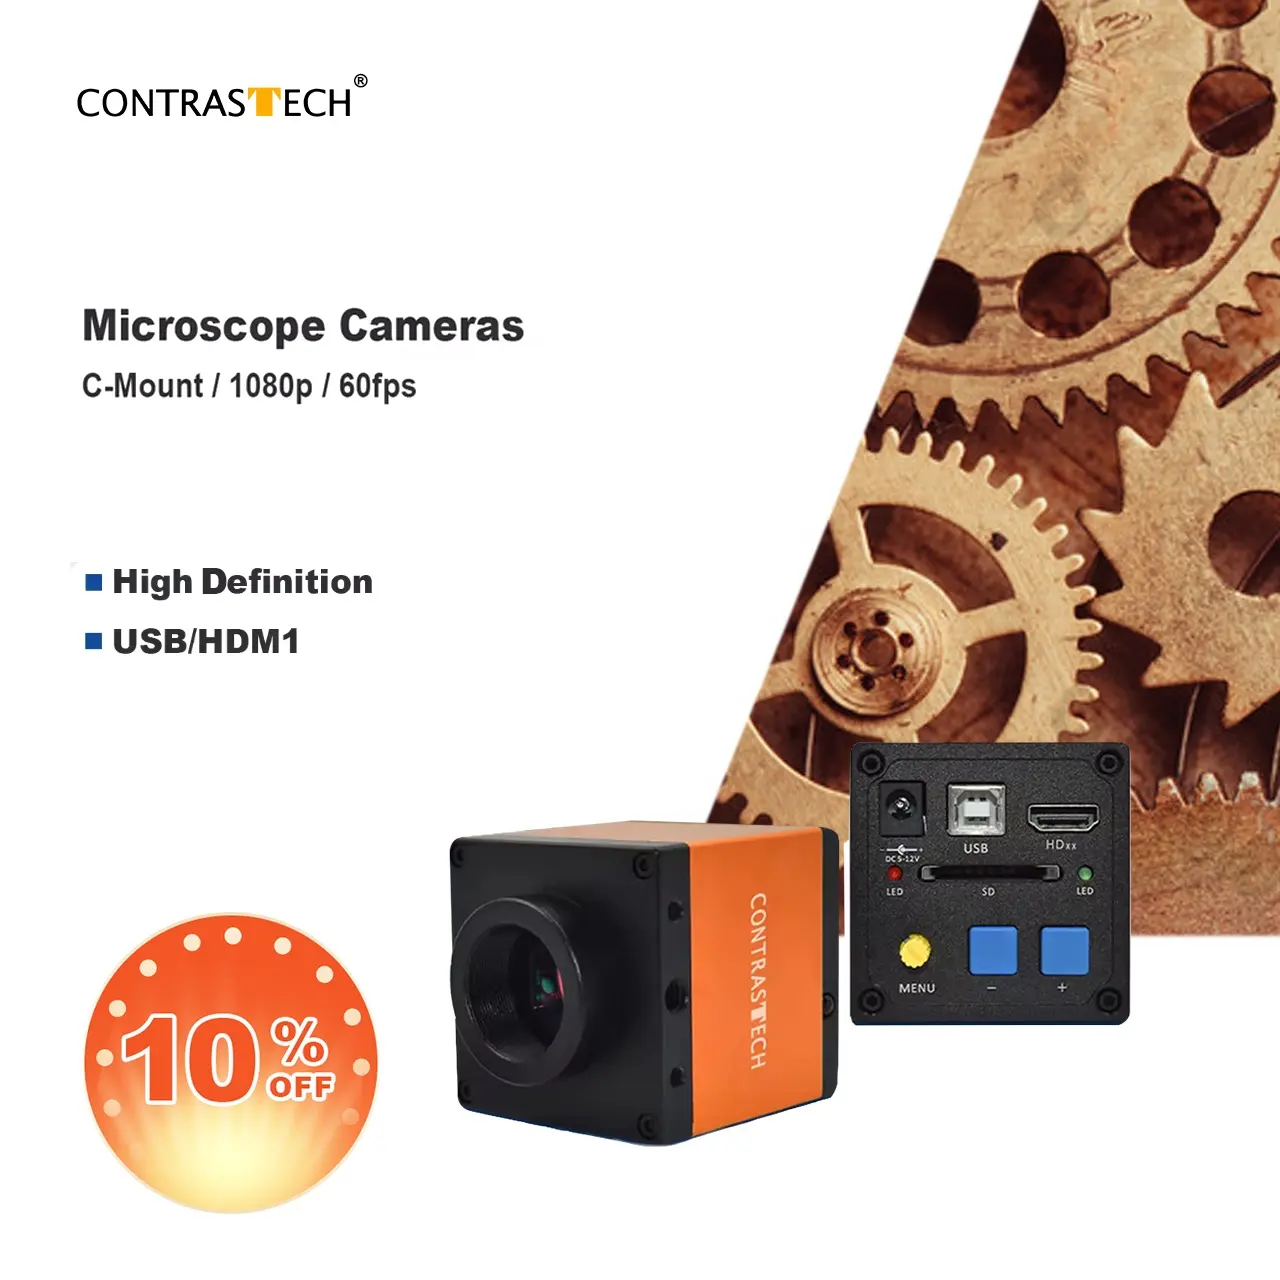 H-DMI destek TF kart 1080p 60fps mikroskop dijital mercek spektral kamera USB dijital mikroskop kamera